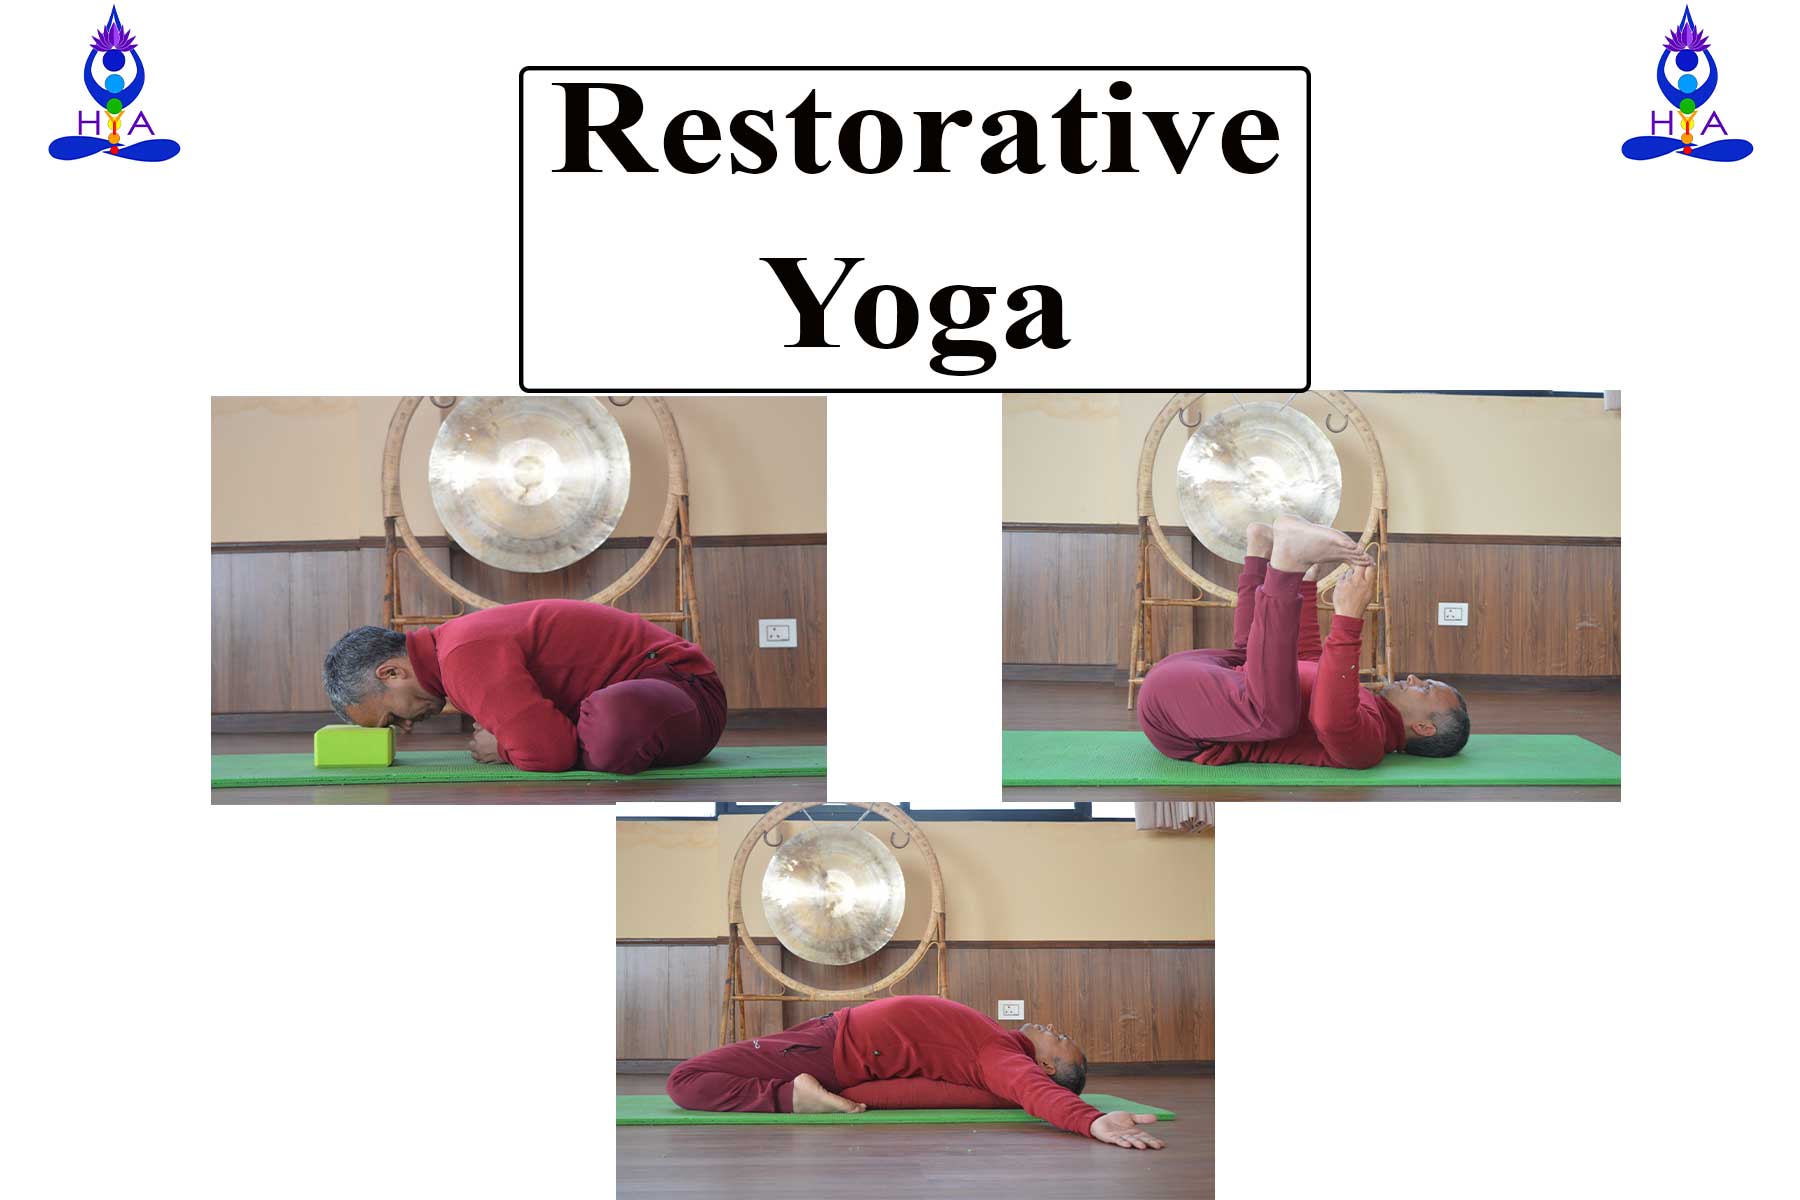 Restorative Yoga / Yogasanas